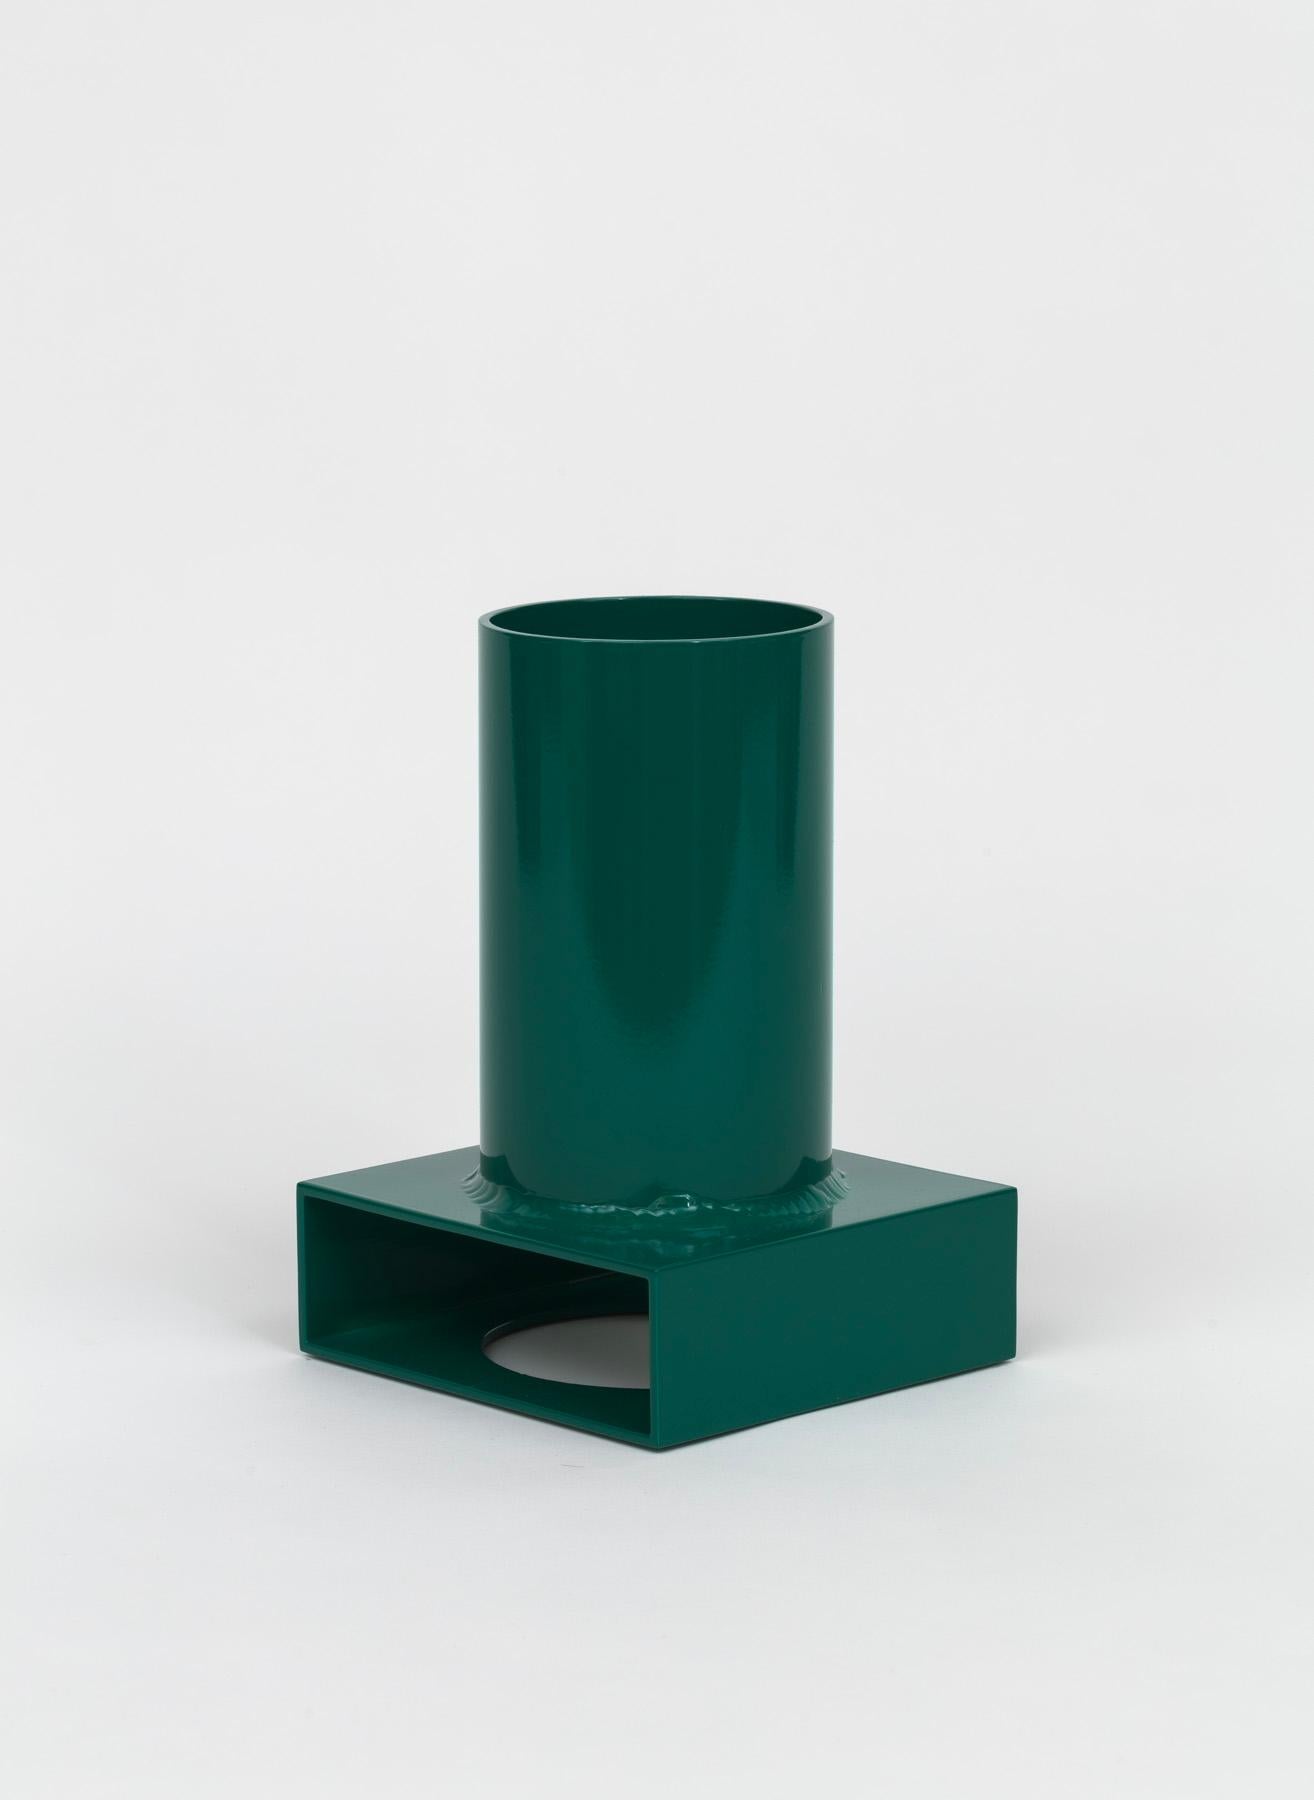 Le Brutalist Tube Vase #002 est composé de profilés d'extrusion d'aluminium courants. Les tubes ronds et rectangulaires simples sont coupés, percés et soudés avec précision, en gardant à l'esprit des proportions spécifiques. La relation résultante